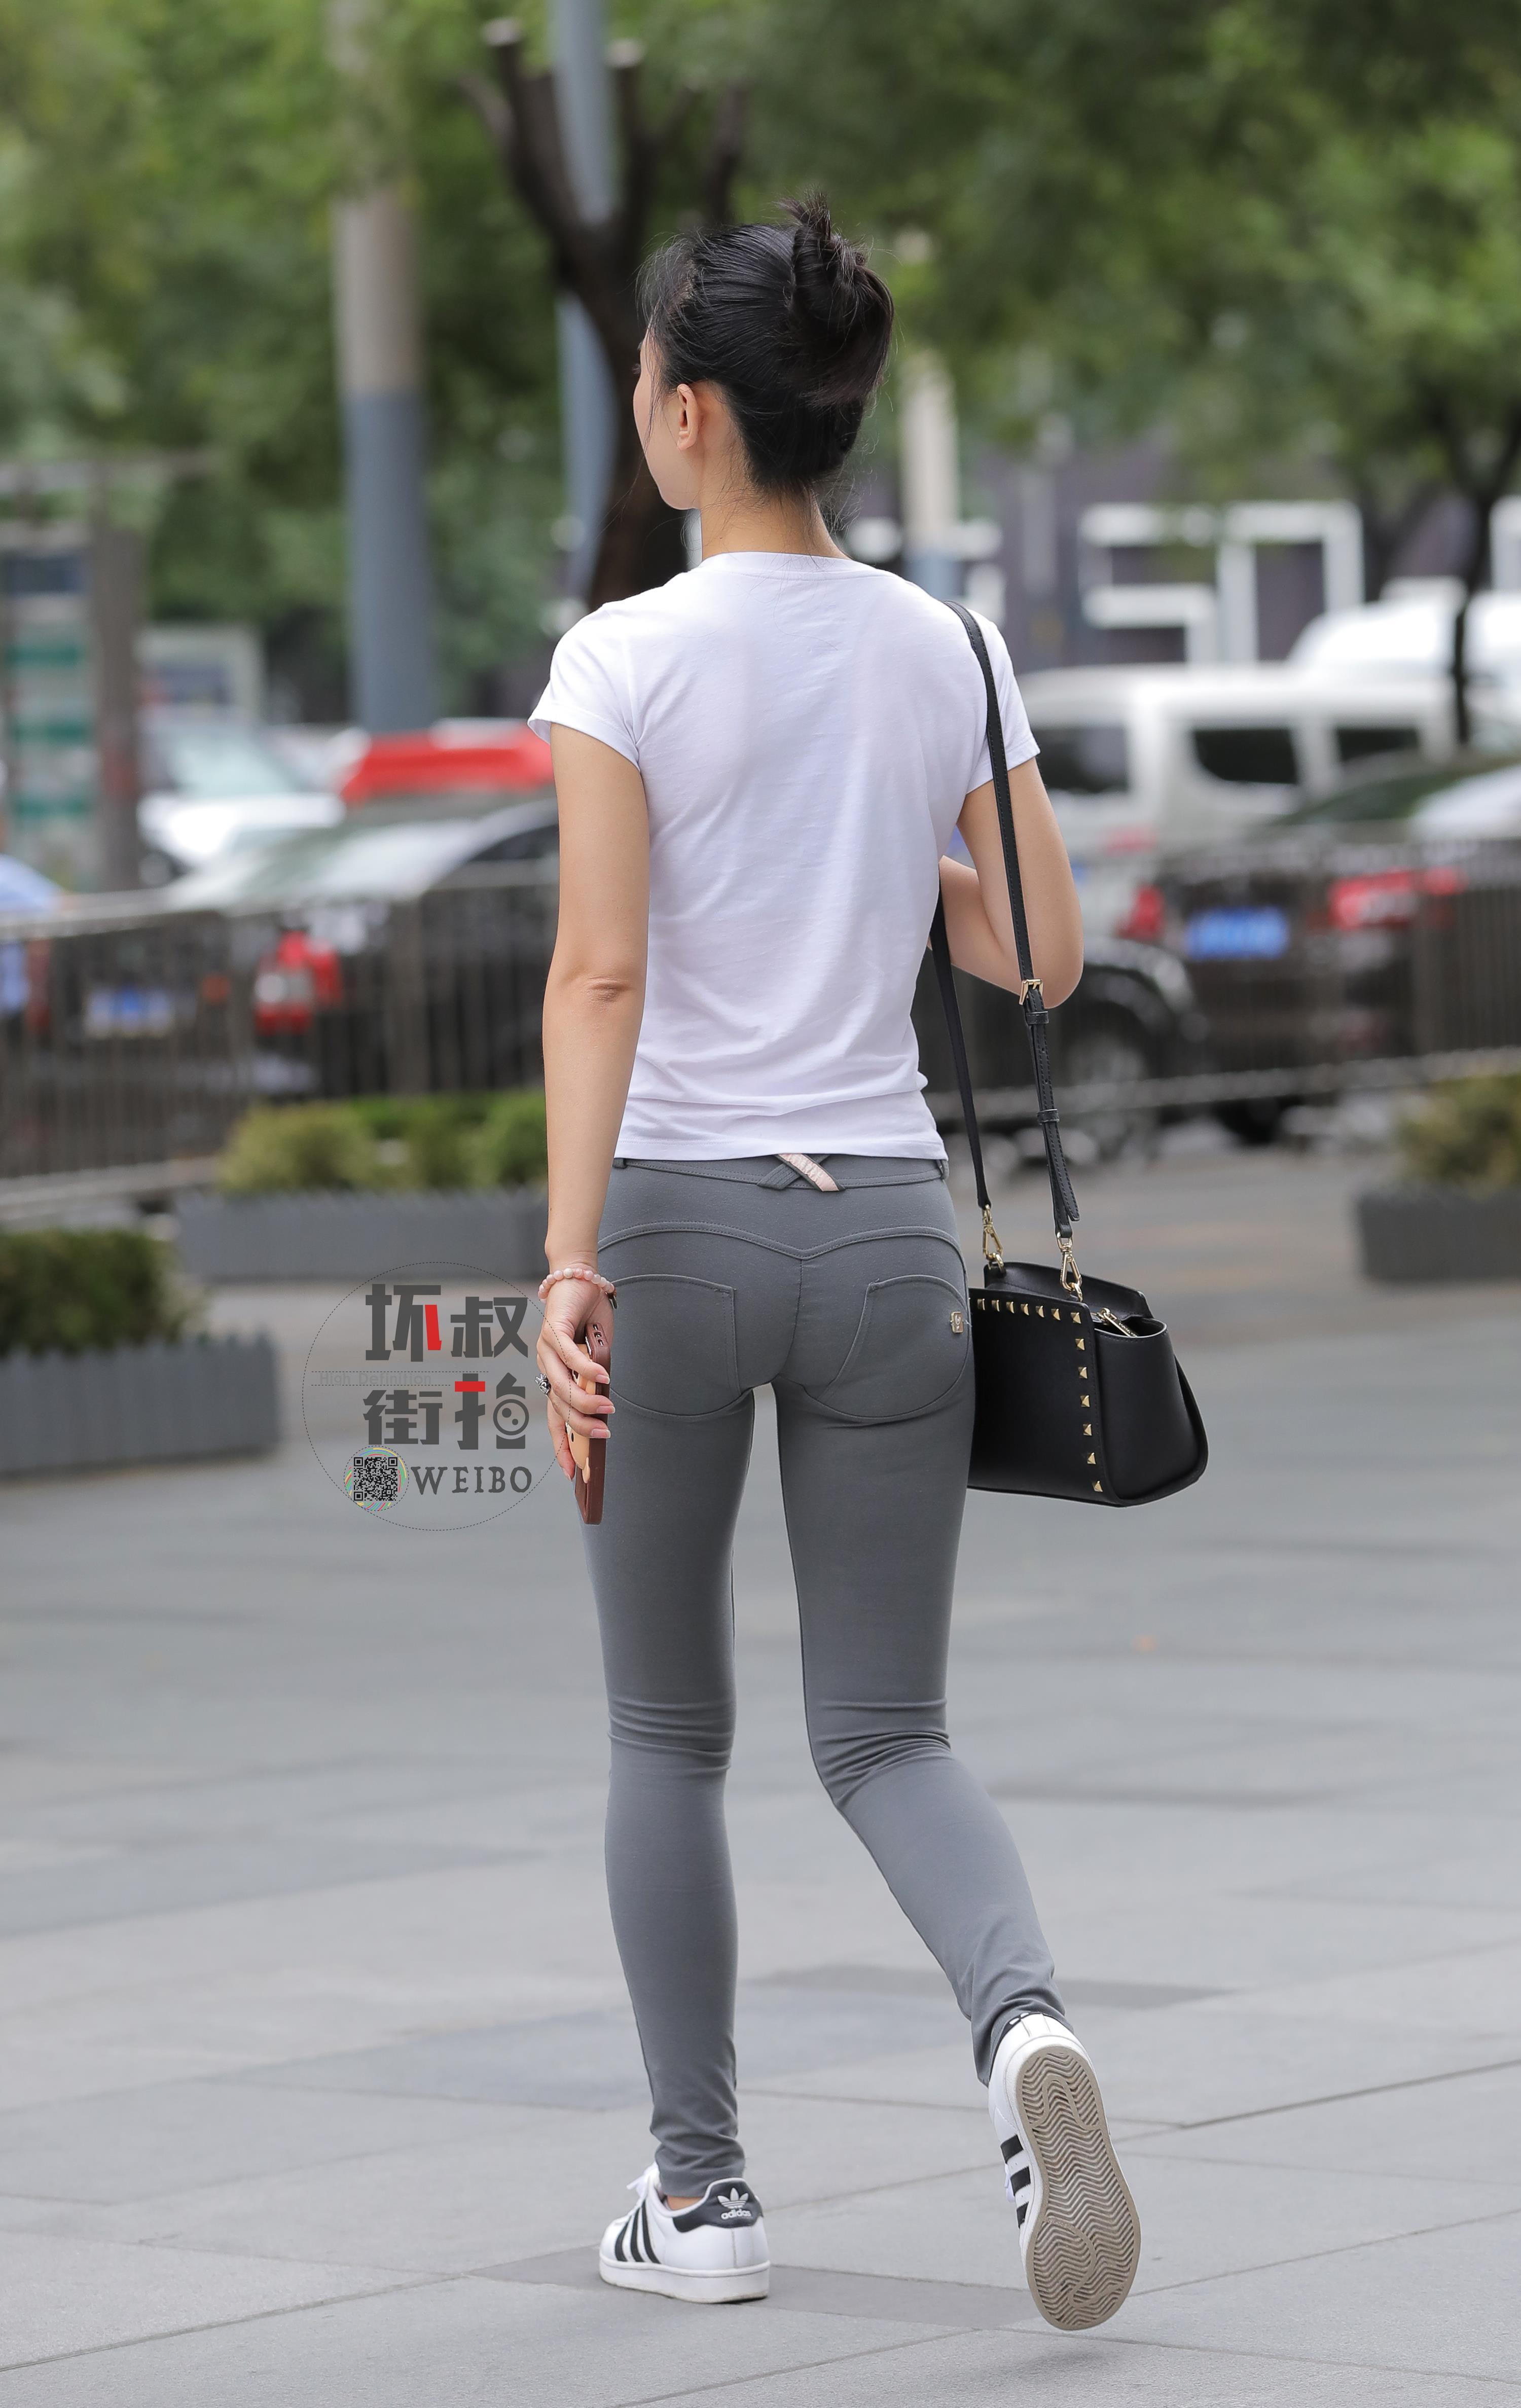 购物街边走边喝奶茶的性感美女 白色短袖加紧身长裤,